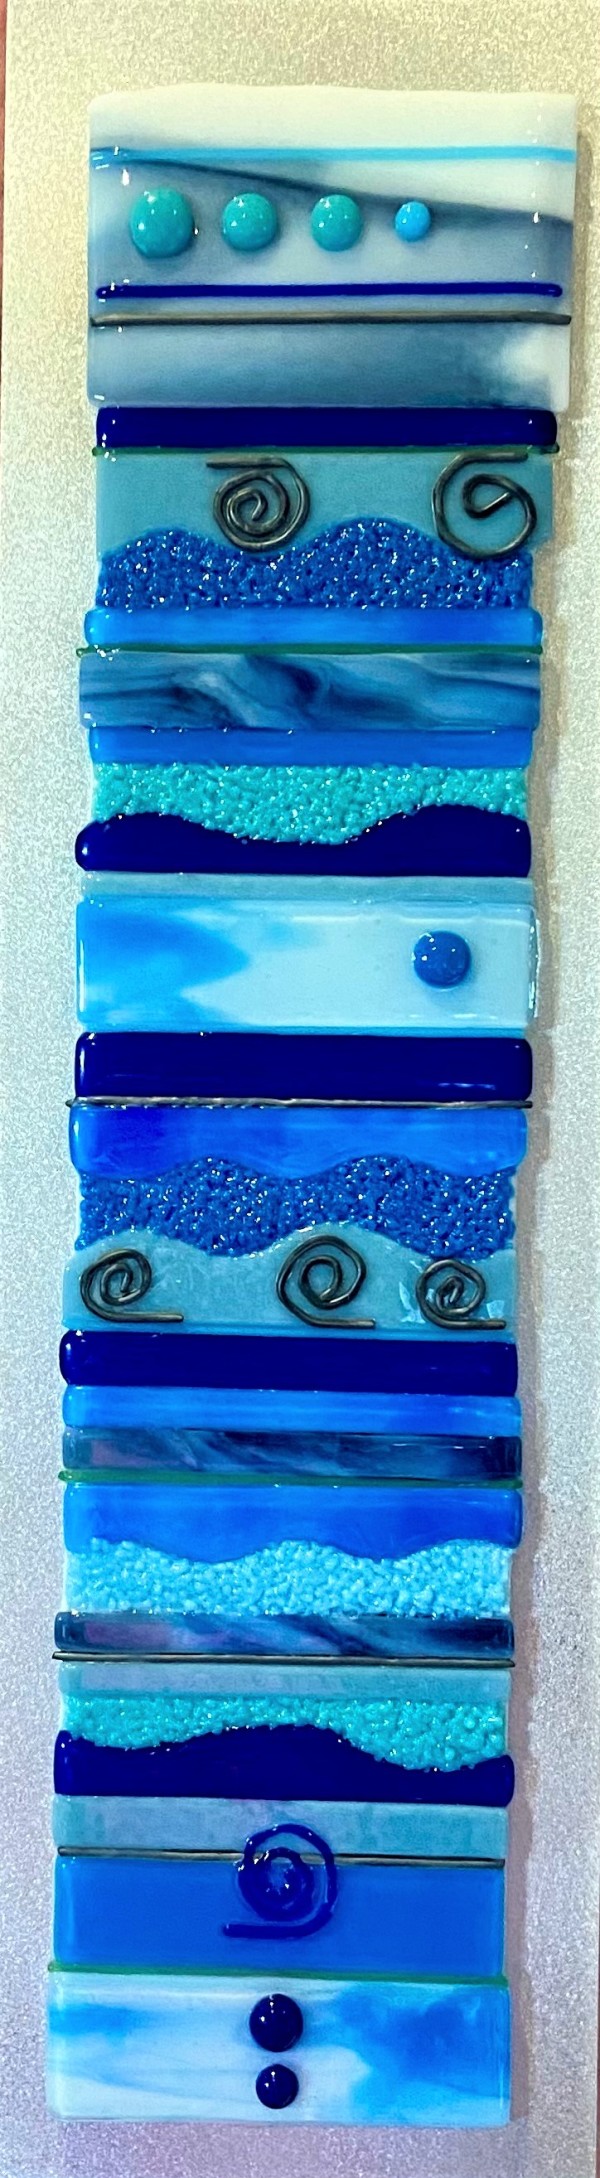 Deep Blue Sea by Cindy Cherrington